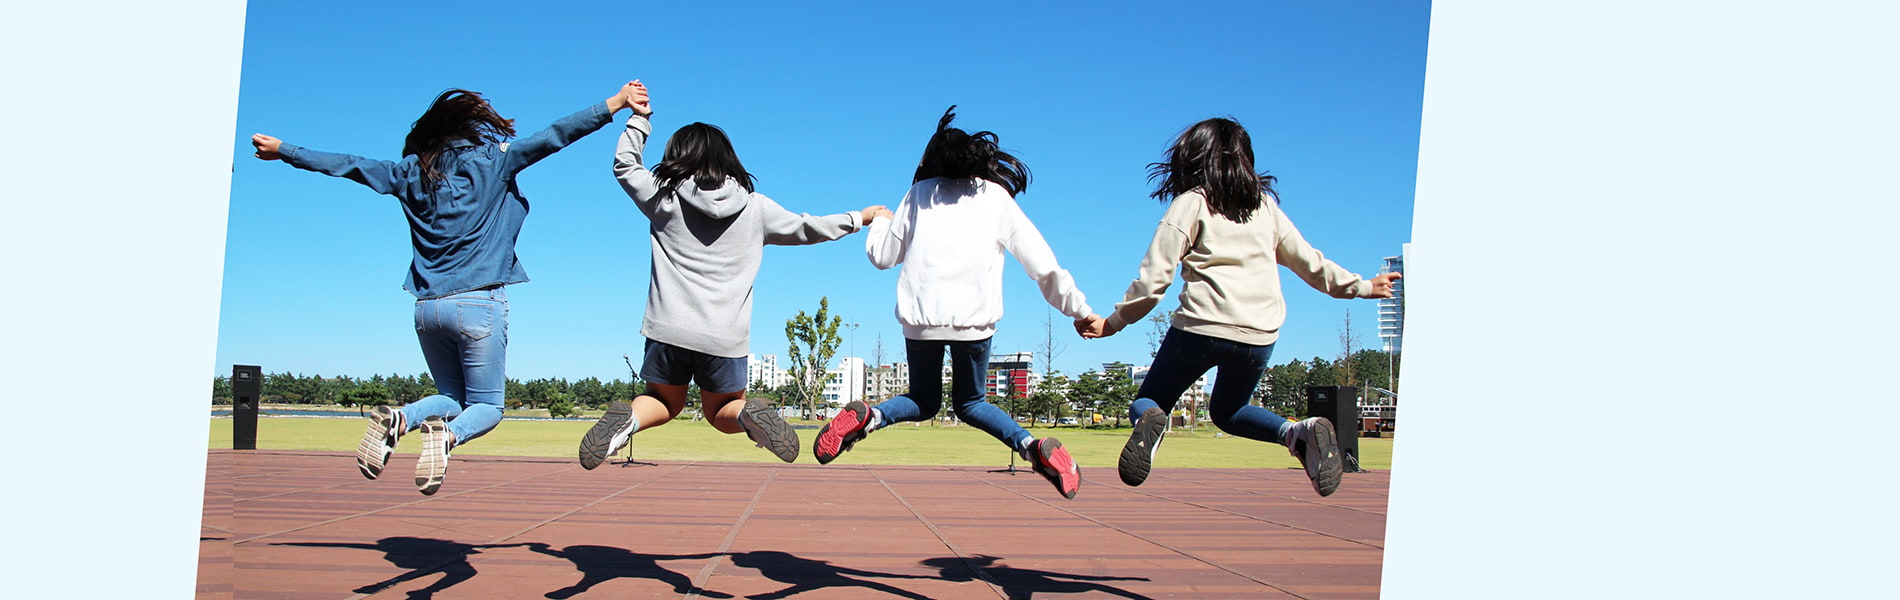 ジャンプをする4人の少女